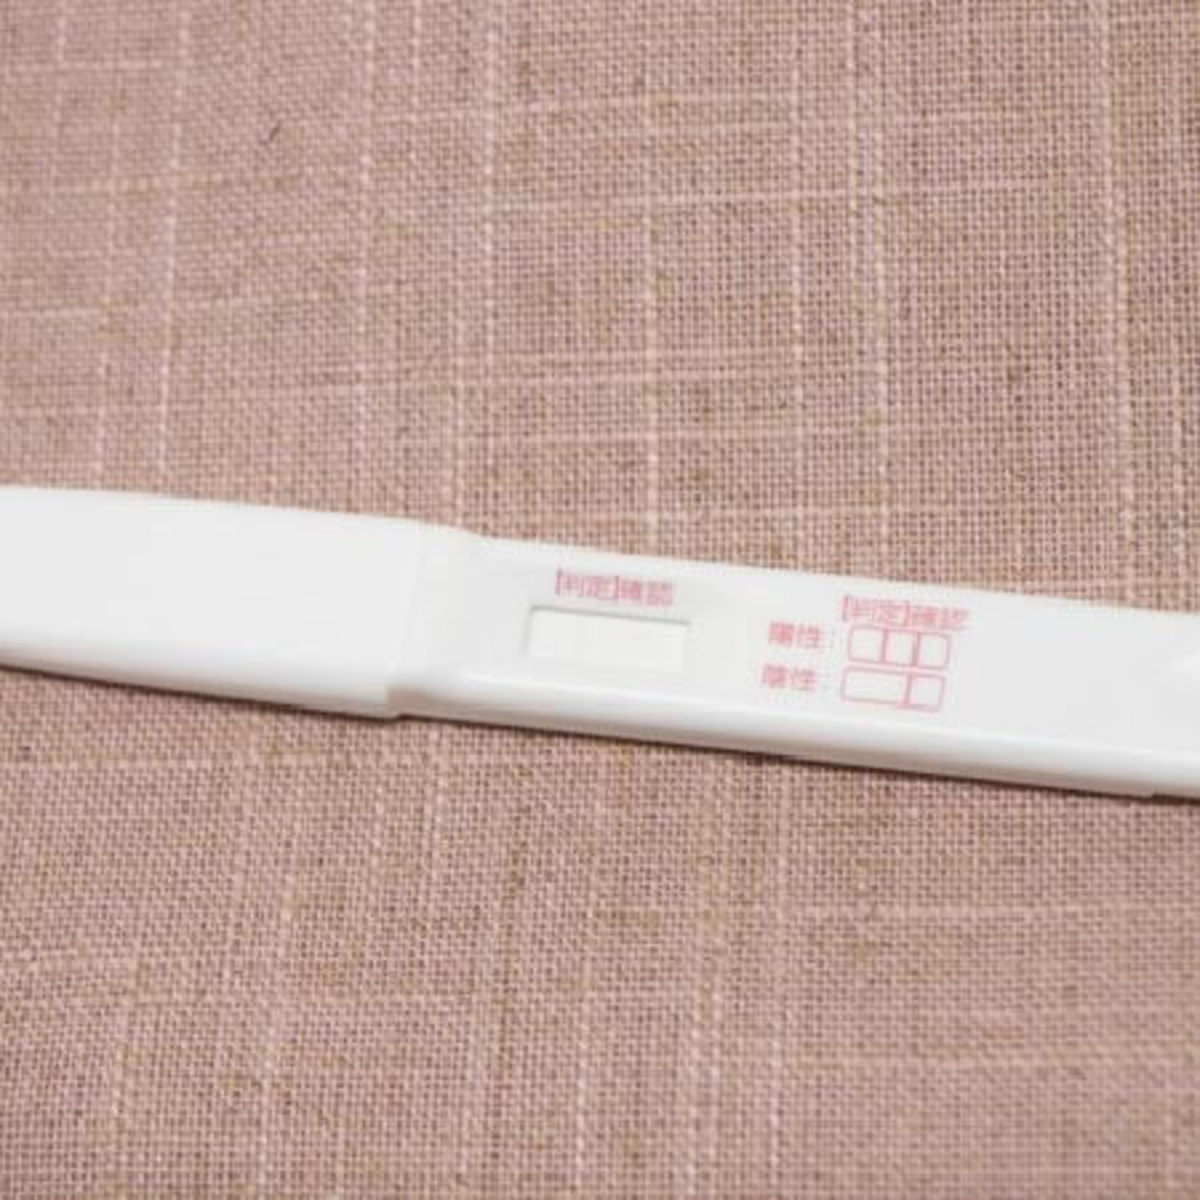 使用済みの 妊娠検査薬 が高く売れる 闇売買の裏で横行する 中絶詐欺 Asagei Biz アサ芸ビズ